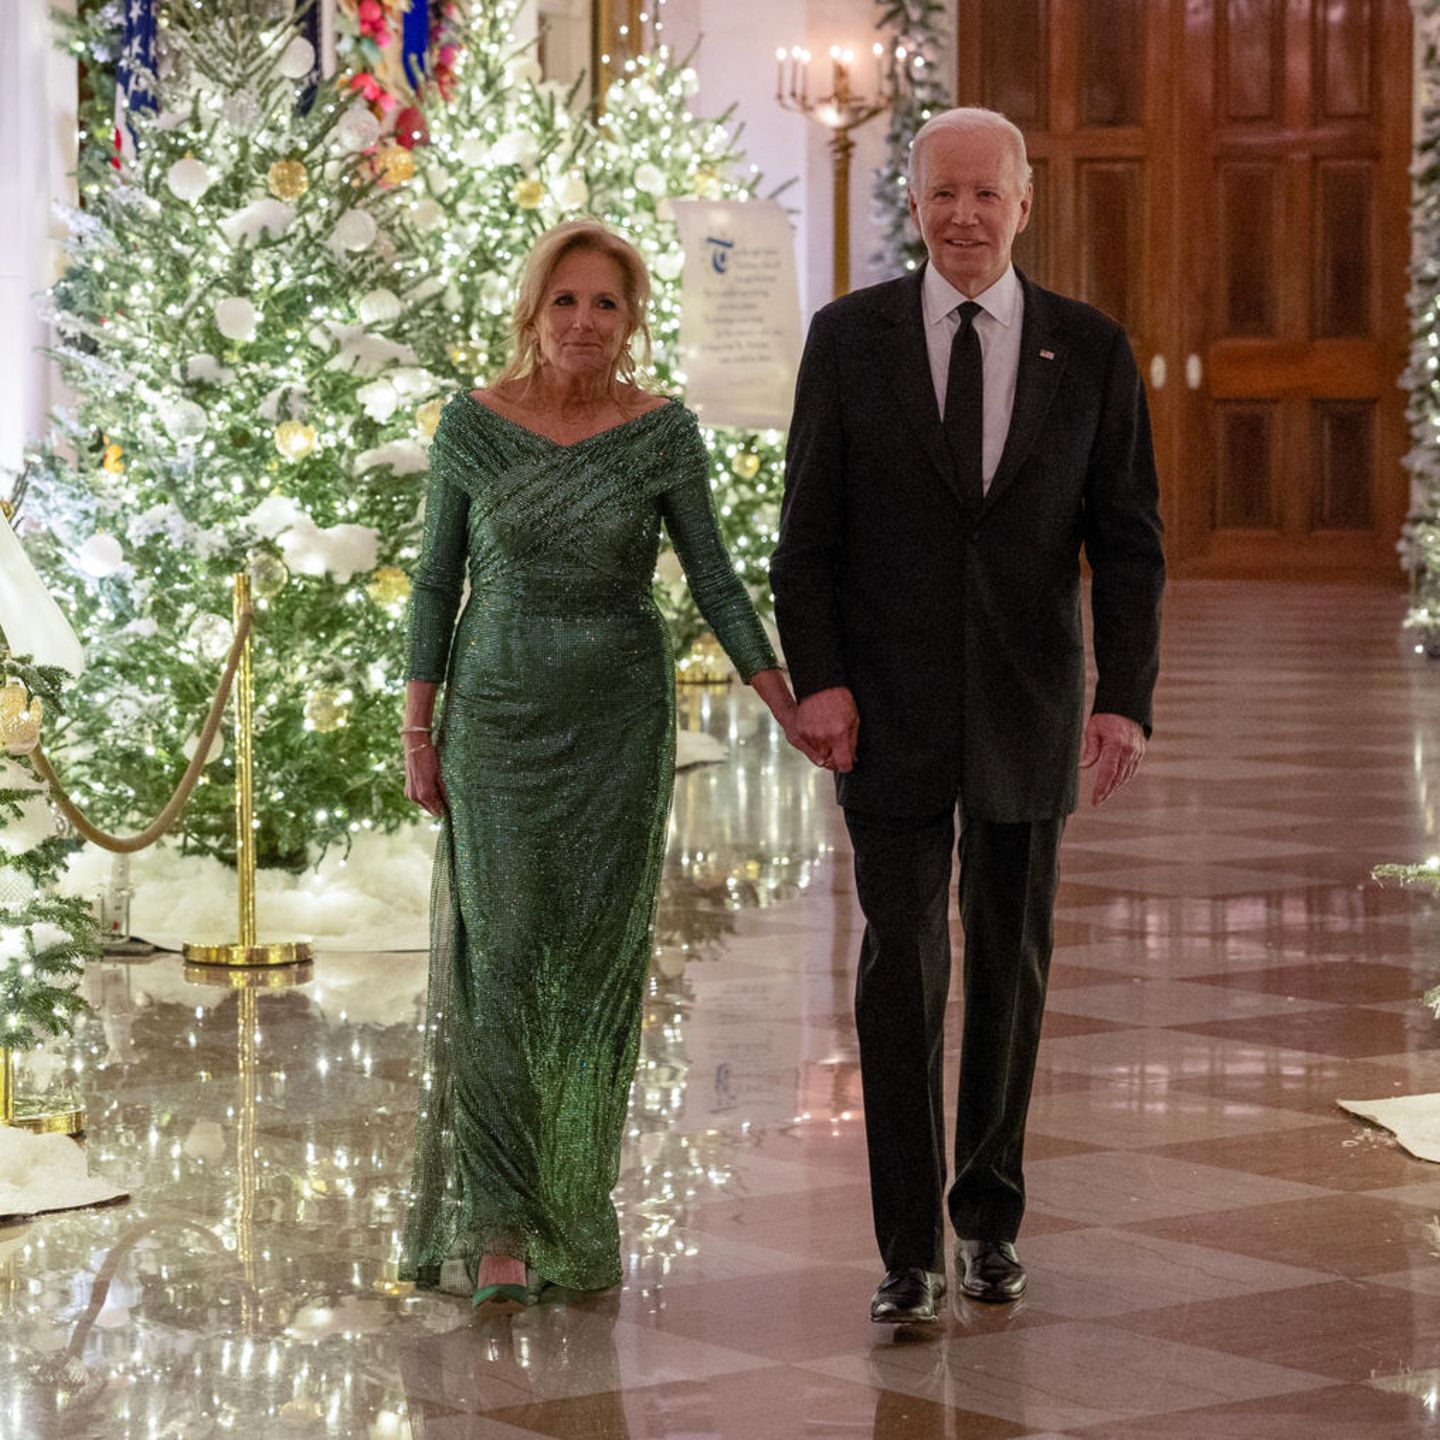 Alle Jahre wieder: Präsident Joe und seine Frau Dr. Jill Biden laden zur "Kennedy Center Honorees Reception" ins Weiße Haus ein. In glamouröser Paillettenrobe zeigt die First Lady, dass sie dem Platz im Rampenlicht gewachsen ist. Bereits beim Empfang des indischen Premierministers hatte sie auf den gleichen Look gesetzt – ein Kleid mit Geschichte. 